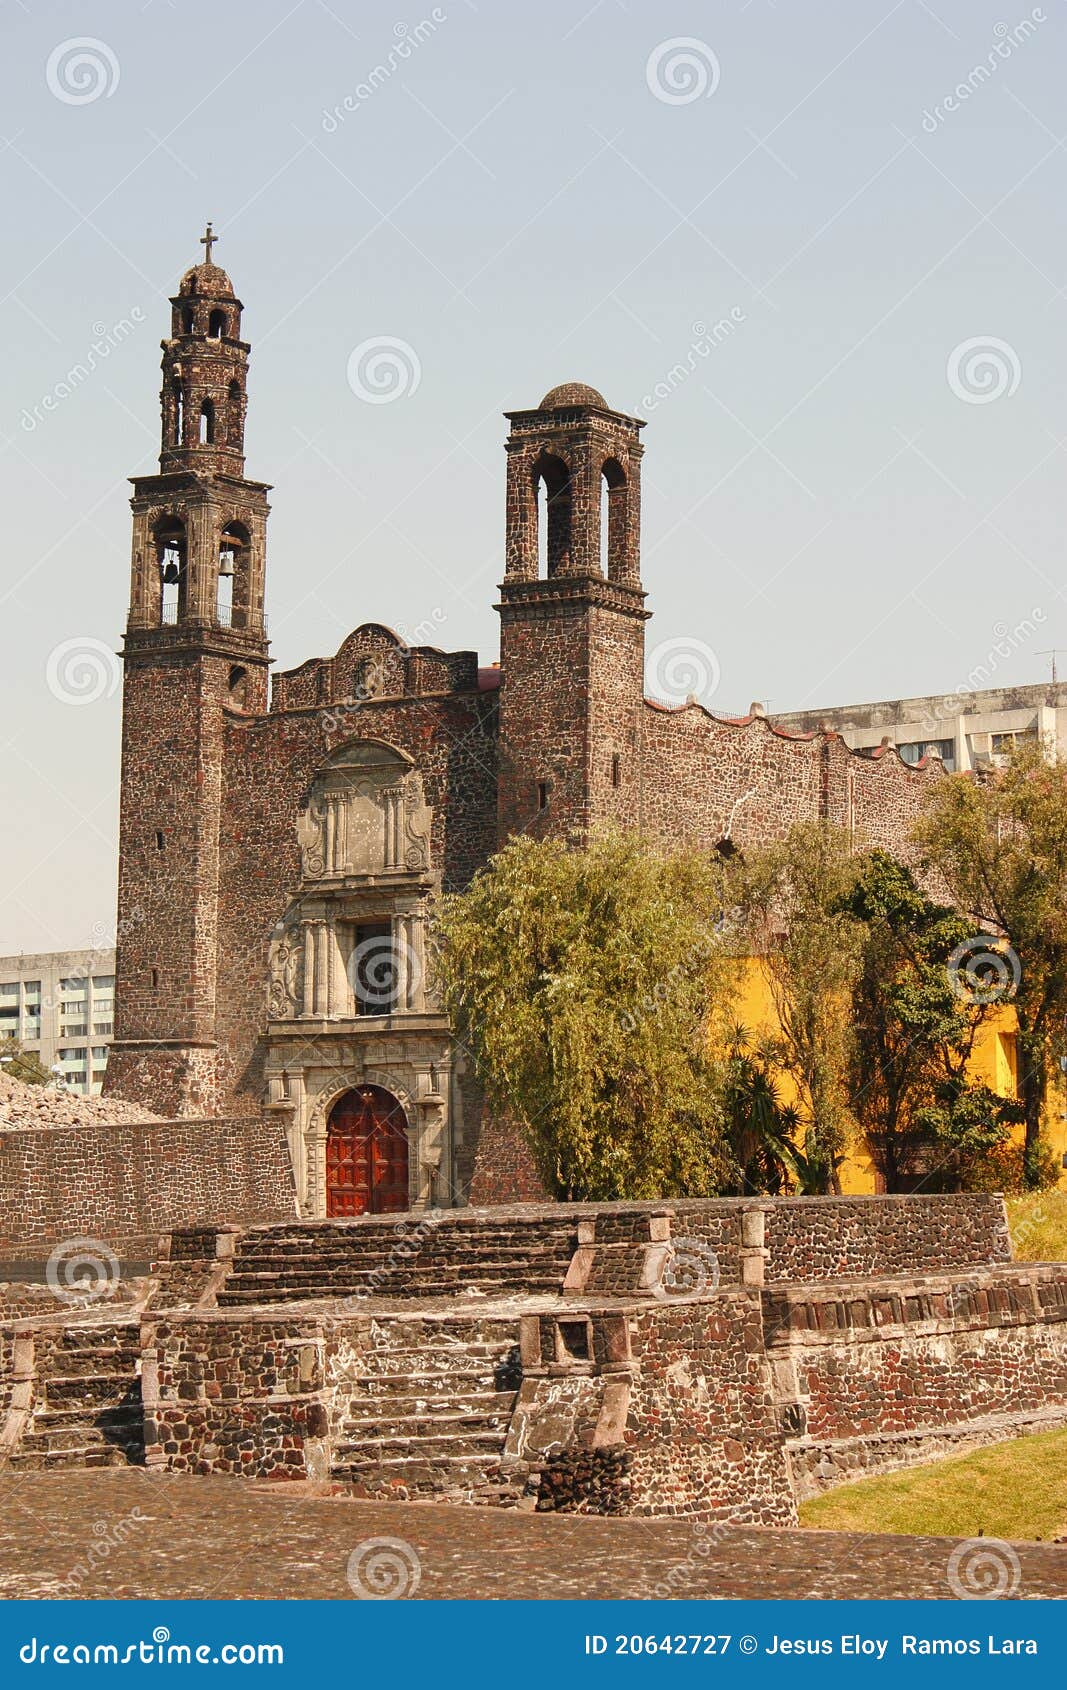 santiago church in tlatelolco, mexico city i